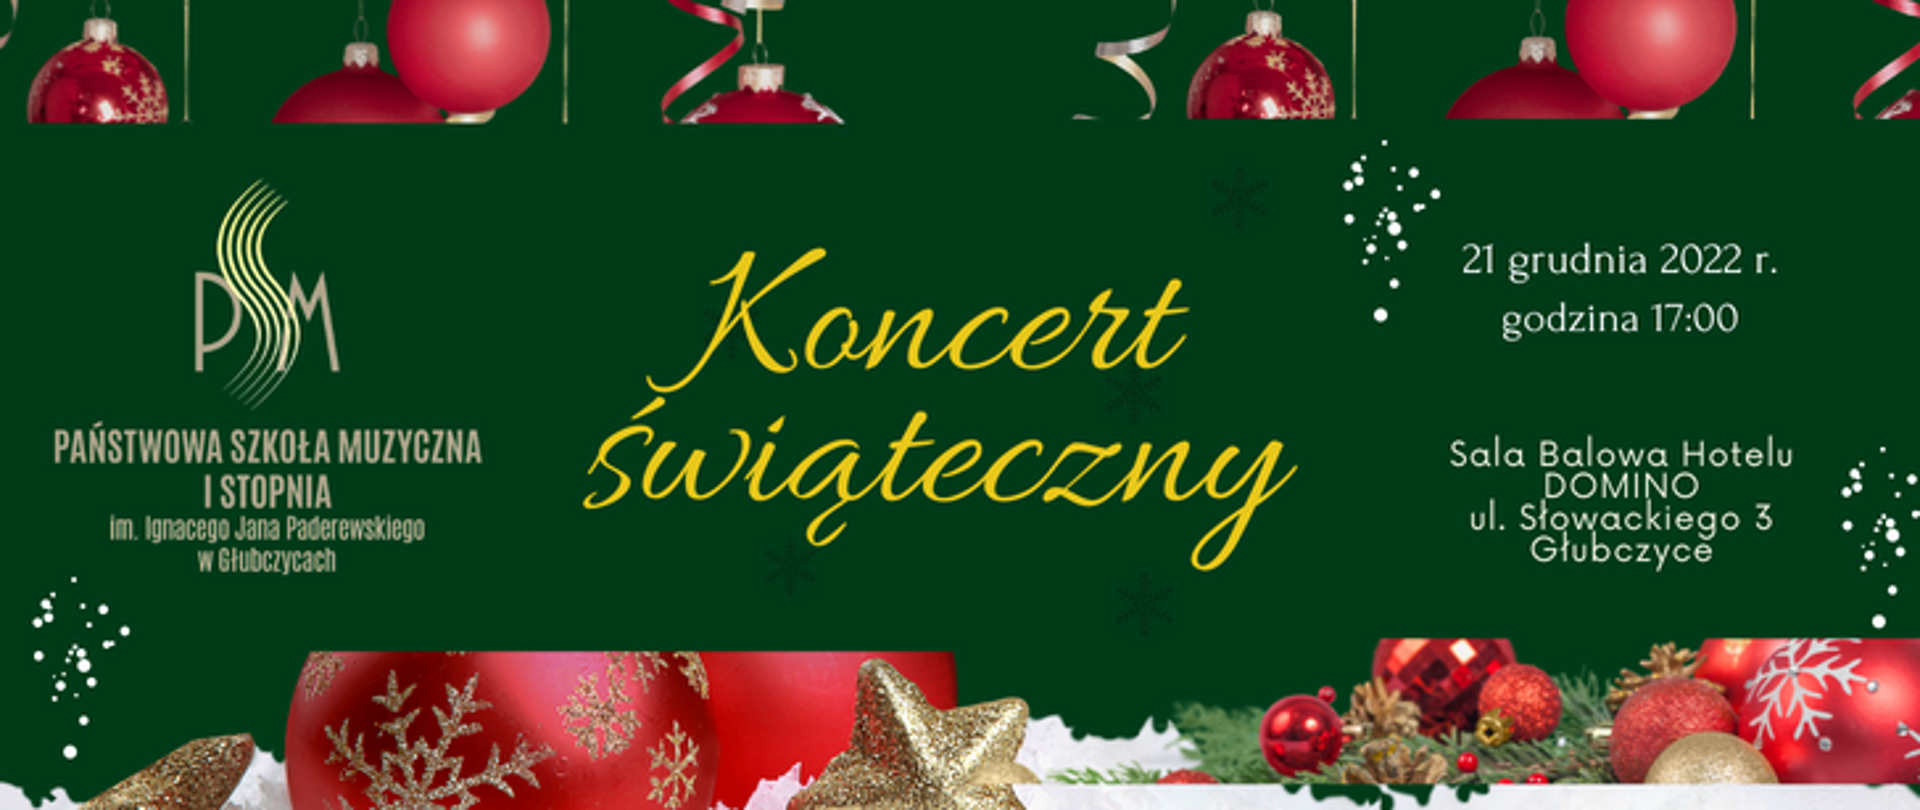 Plakat PSM w Głubczycach zapraszający na "Koncert świąteczny". 